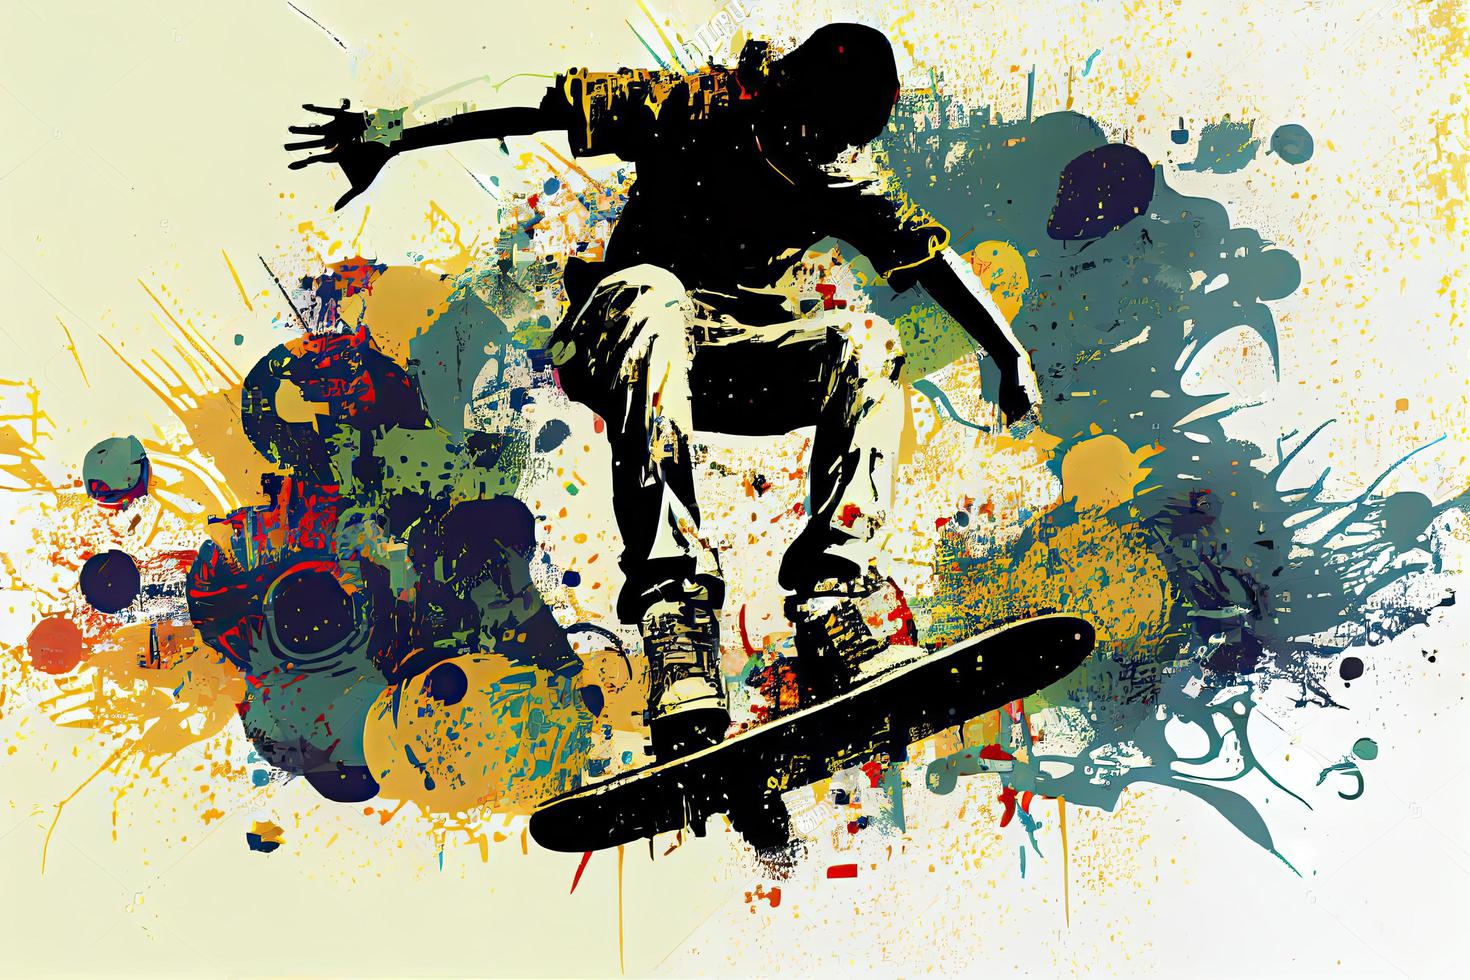 skateboard bakgrund. extrem sporter vektor illustration med kille man skater foto